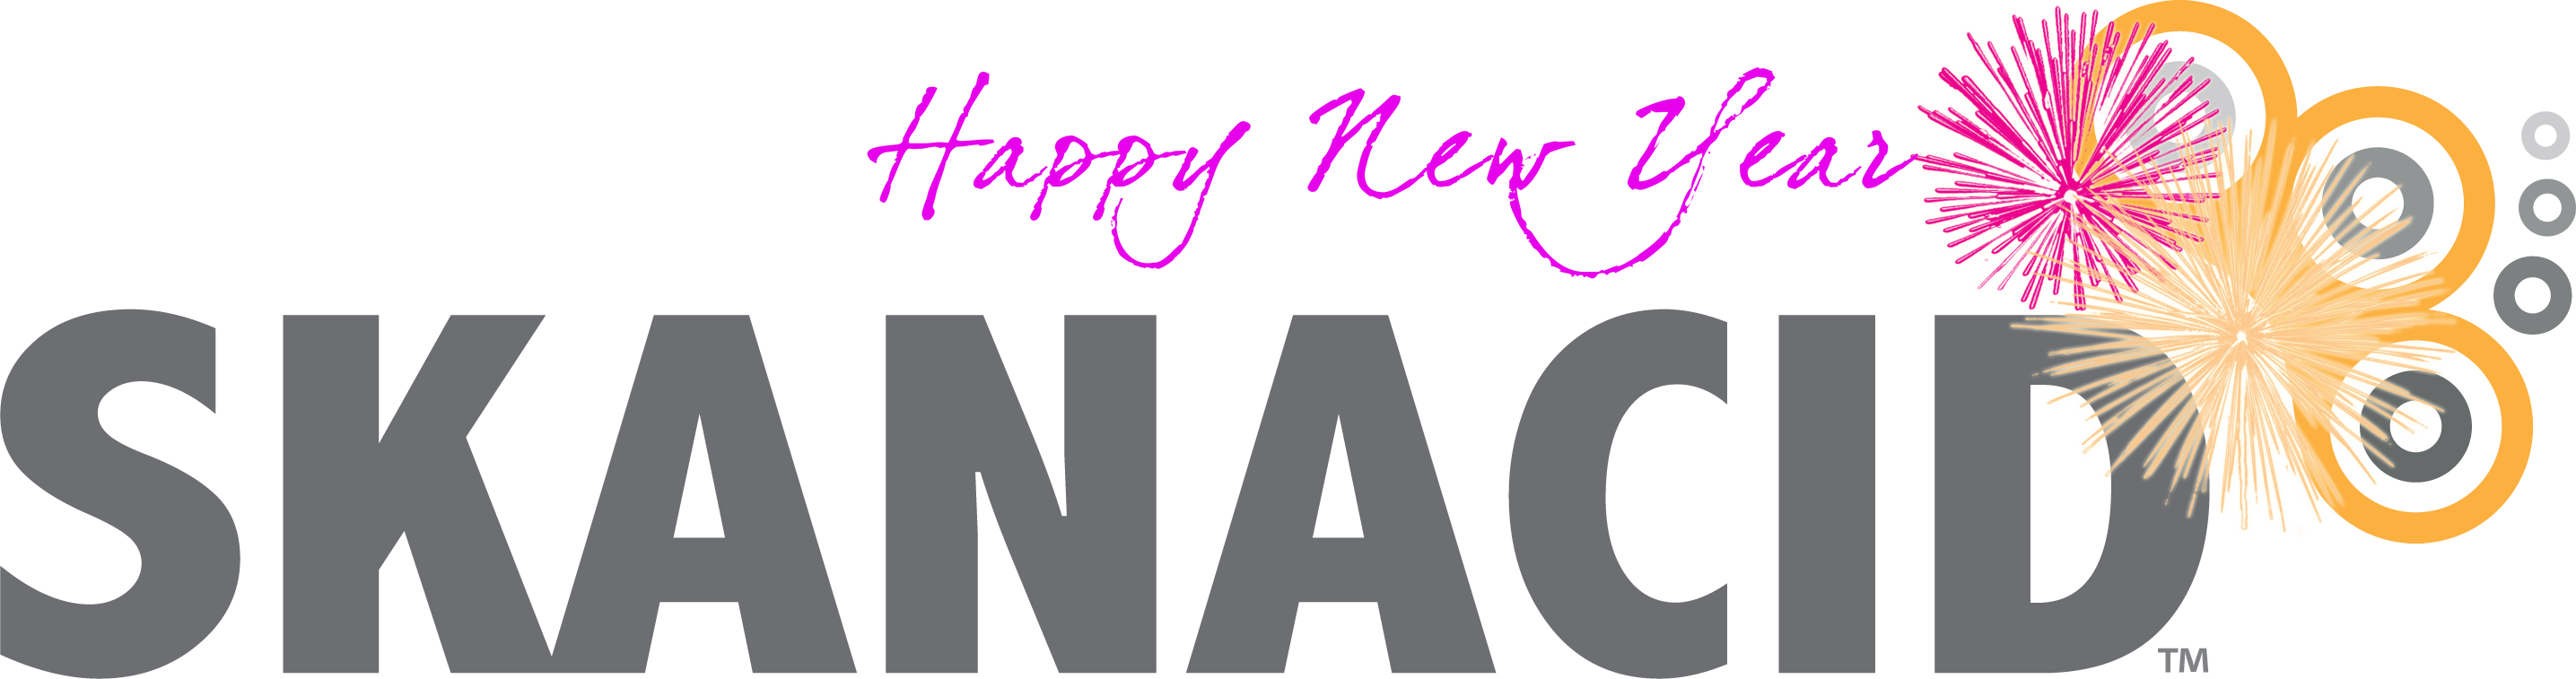 Happy New Year from Skanacid